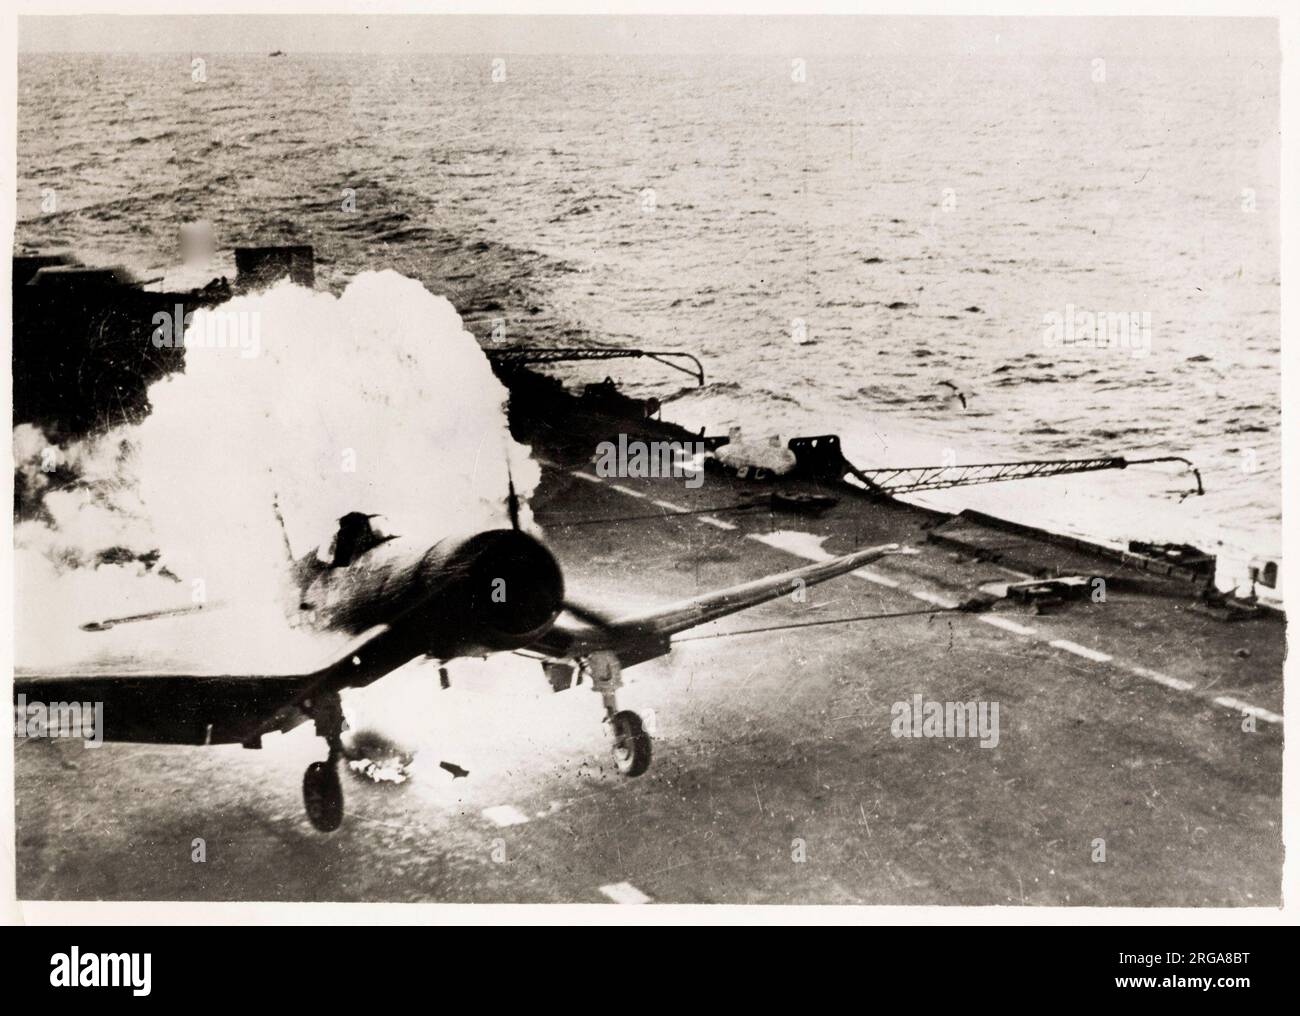 World War II -  Corsair lands in flames on aircraft carrier, Pacific Ocean, pilot unhurt Stock Photo